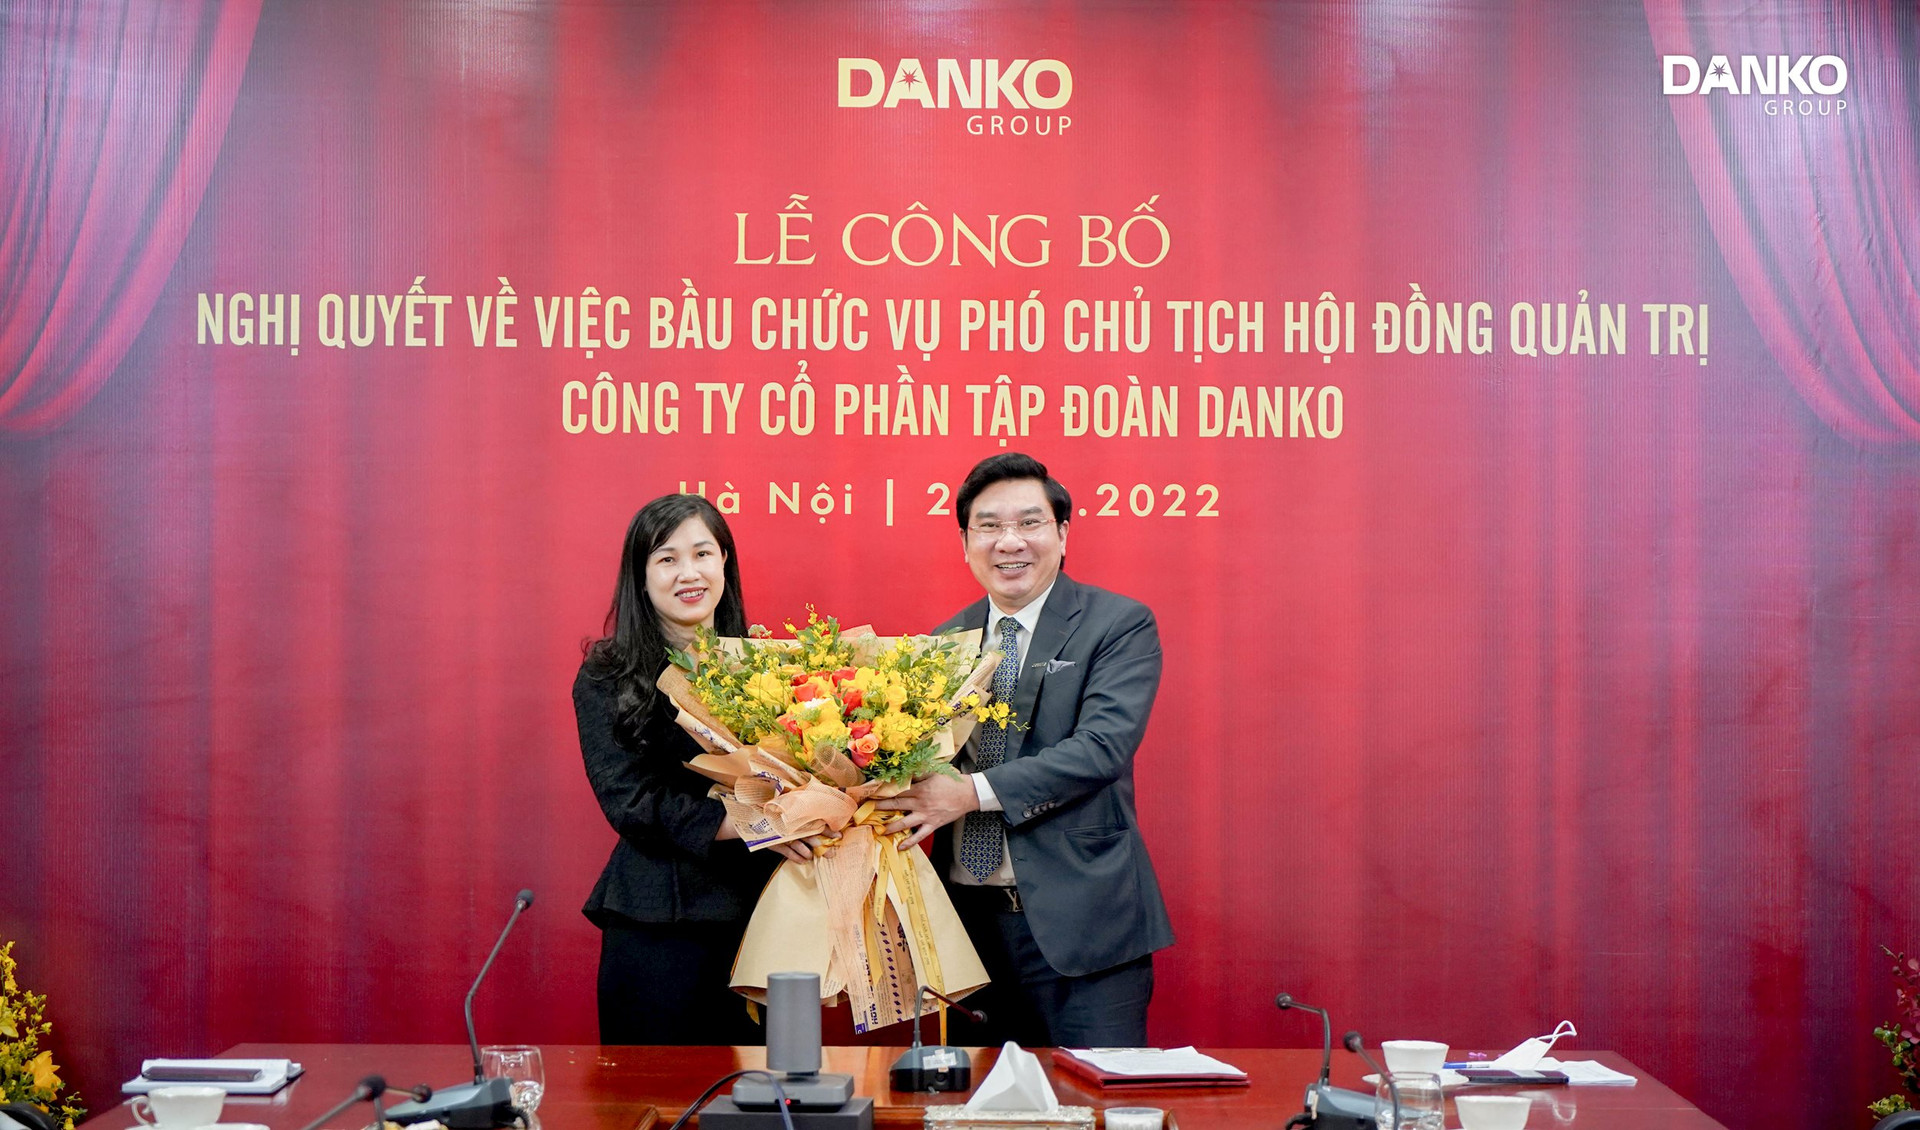 Bà Trần Thị Thu Thủy; Phó Chủ tịch Tập đoàn;Danko Group